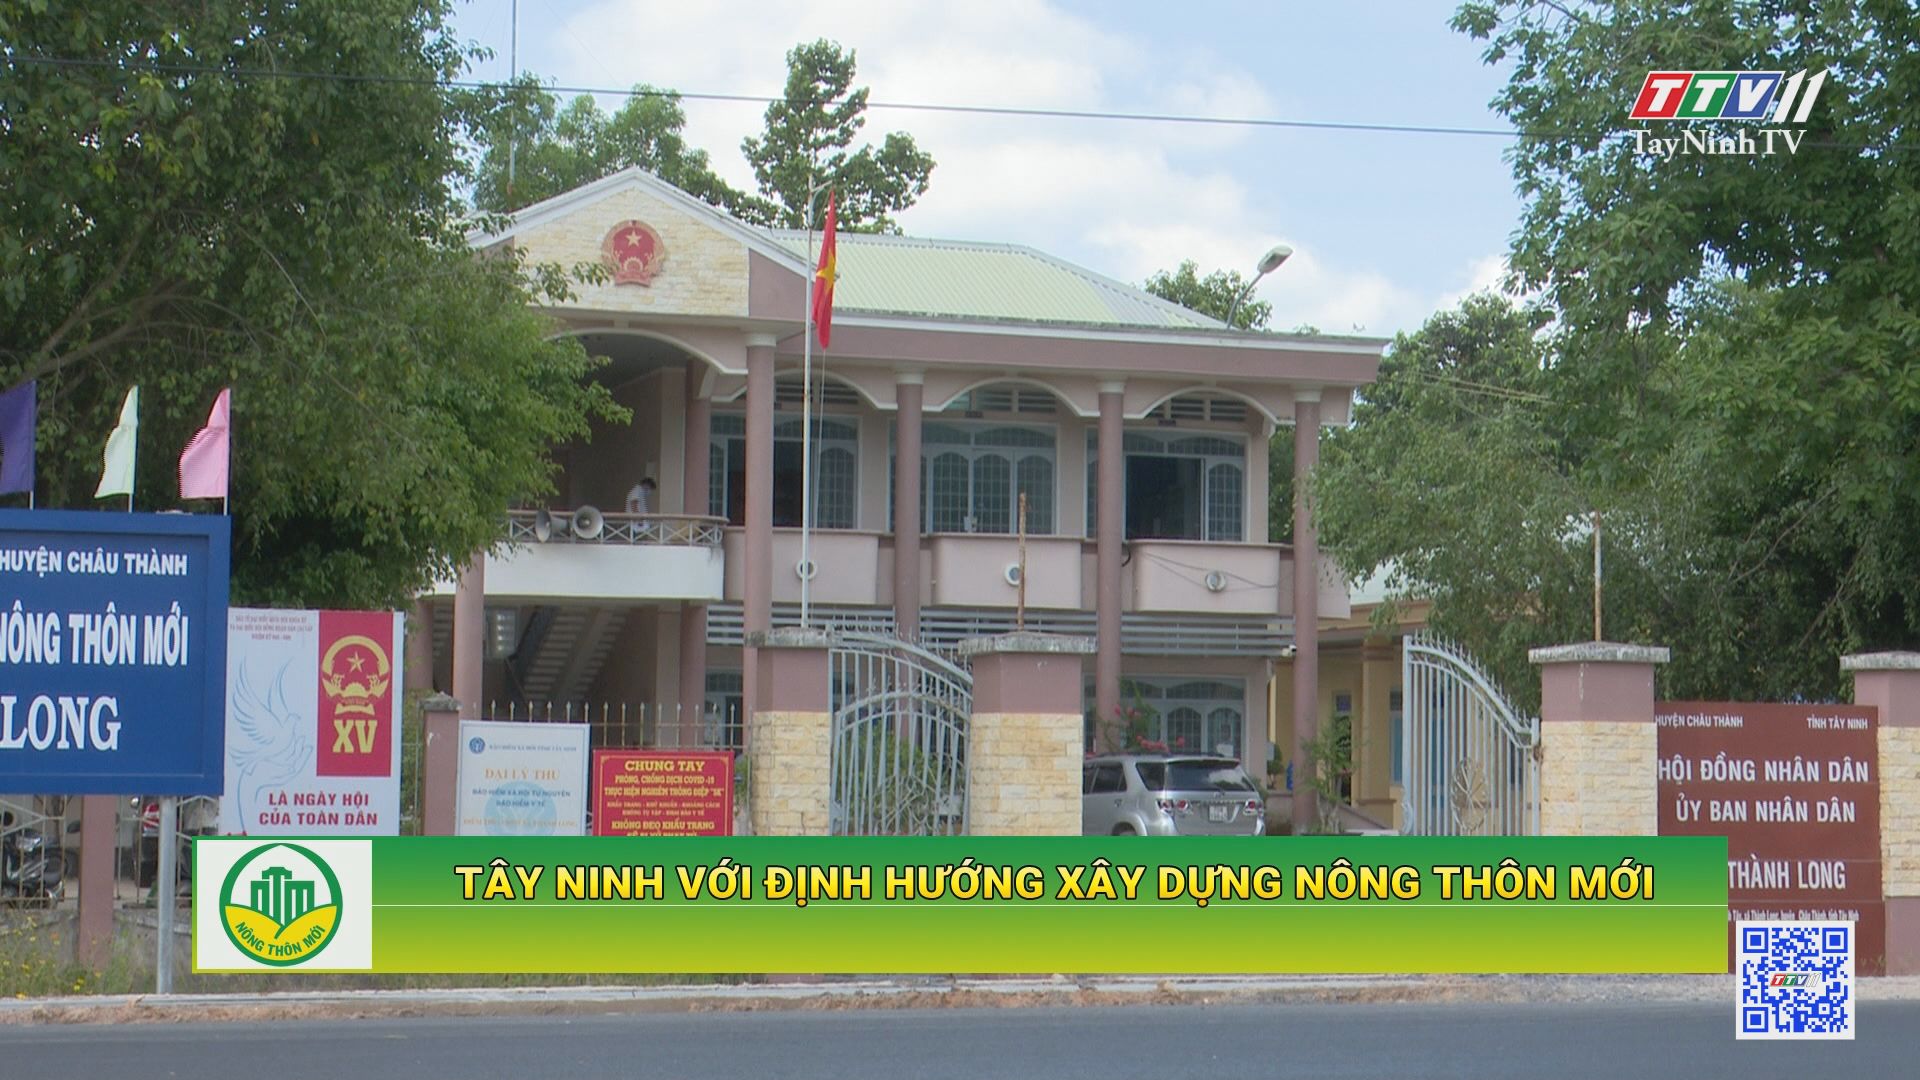 Tây Ninh với định hướng xây dựng nông thôn mới | TÂY NINH XÂY DỰNG NÔNG THÔN MỚI | TayNinhTV